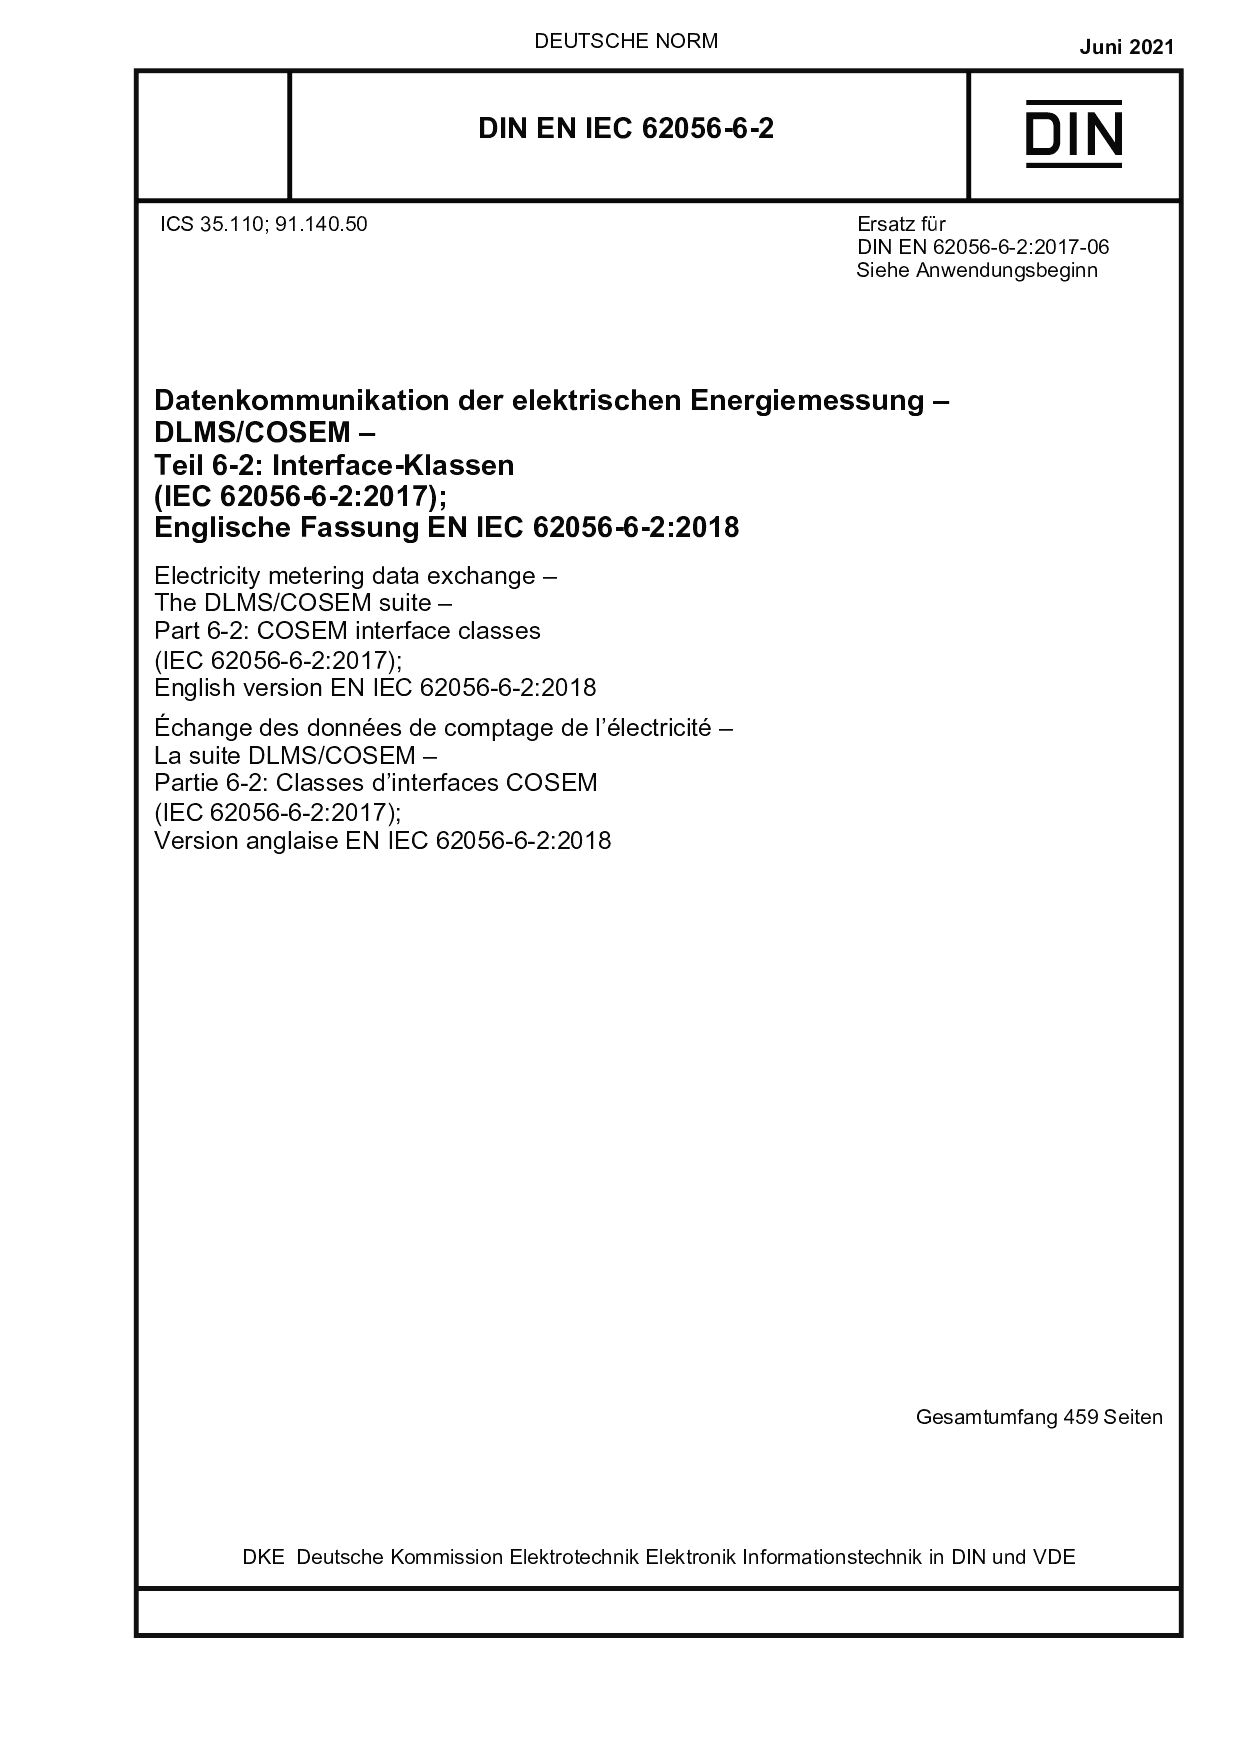 DIN EN IEC 62056-6-2:2021